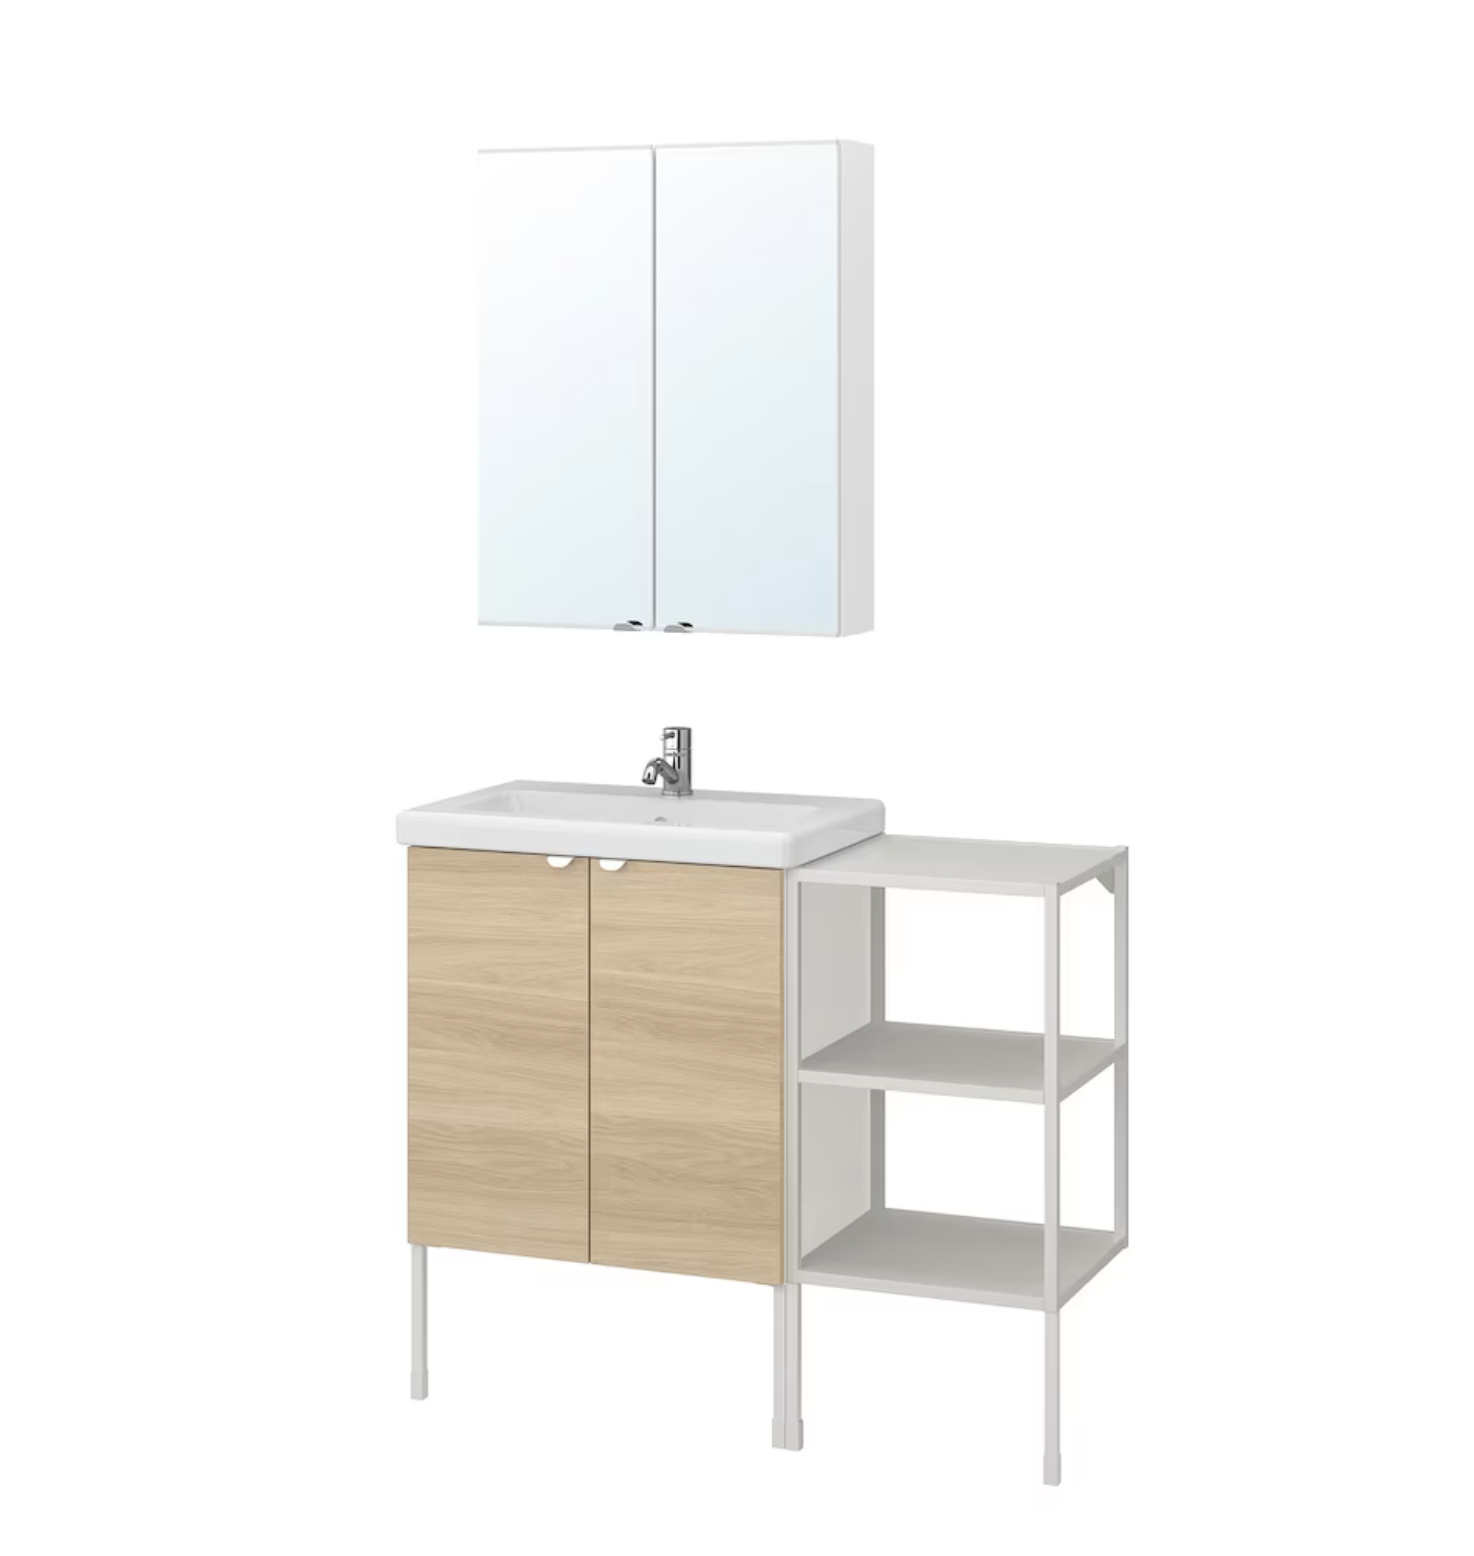 Mueble para baño pequeño en blanco y roble ENHET y TVÄLLEN de IKEA.